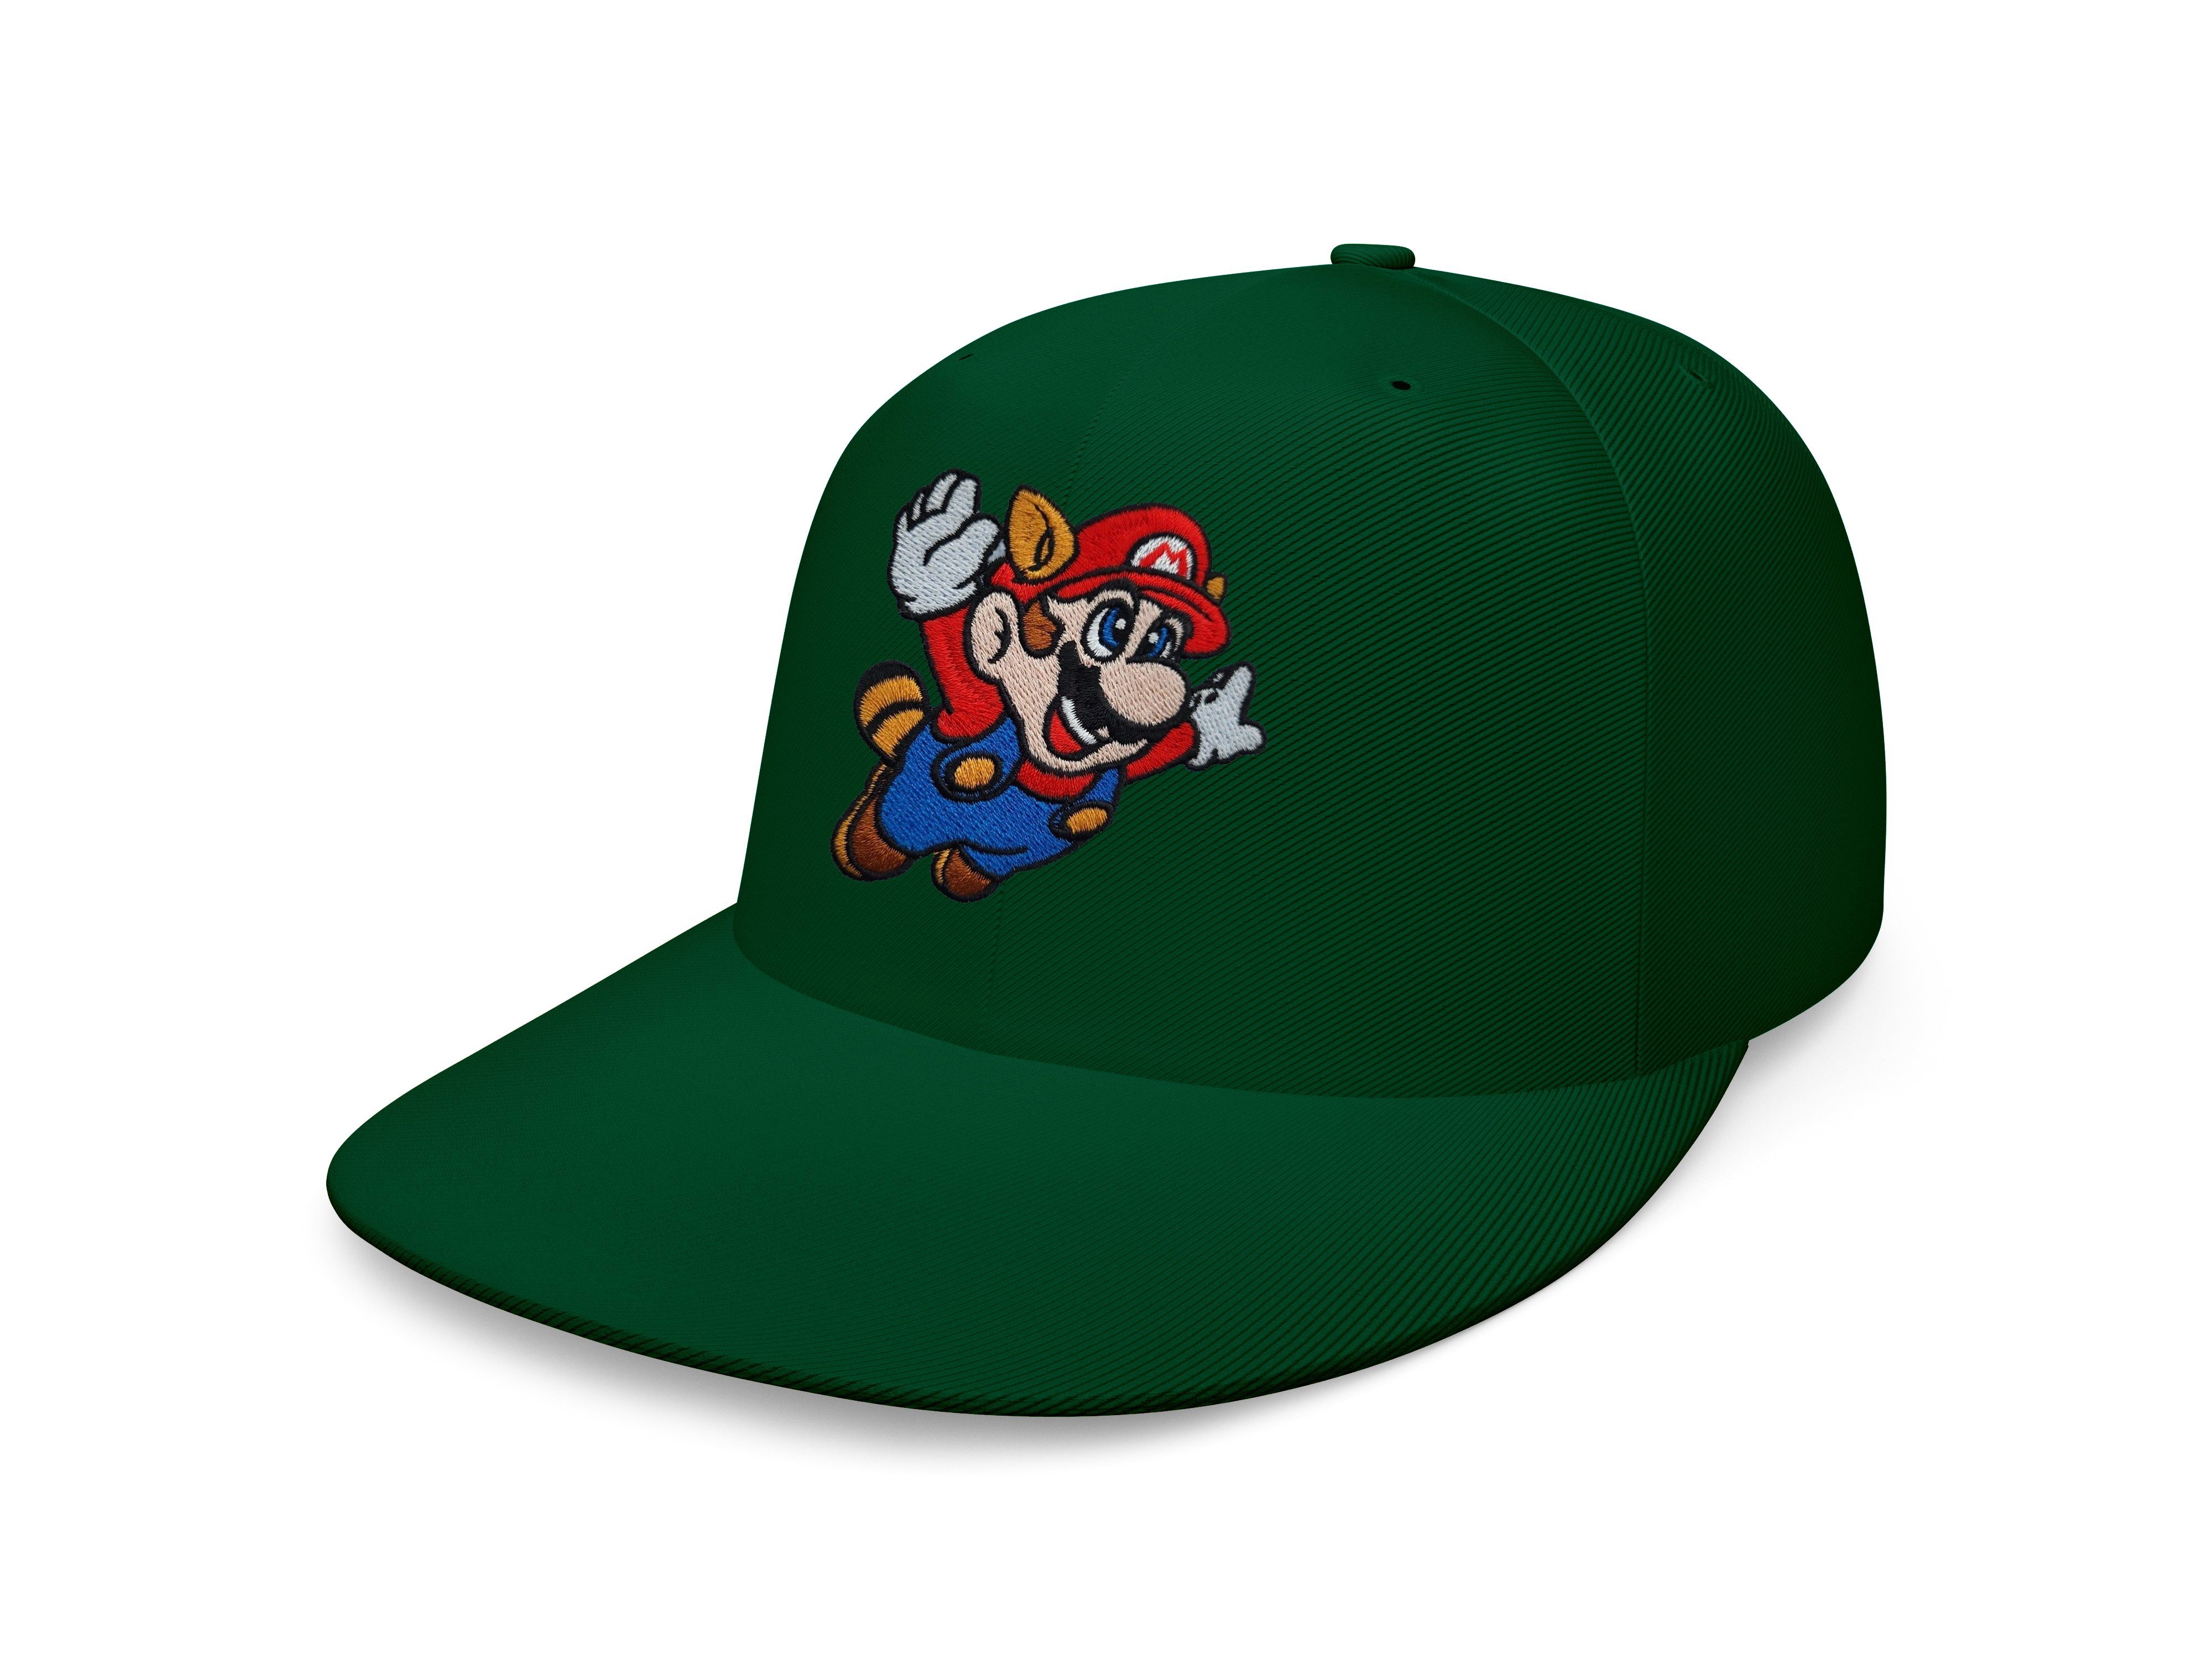 Blondie Mario Snapback Brownie Erwachsene Cap Unisex Fligh Patch Baseball Flaschengrün & Stick Luigi Nintendo